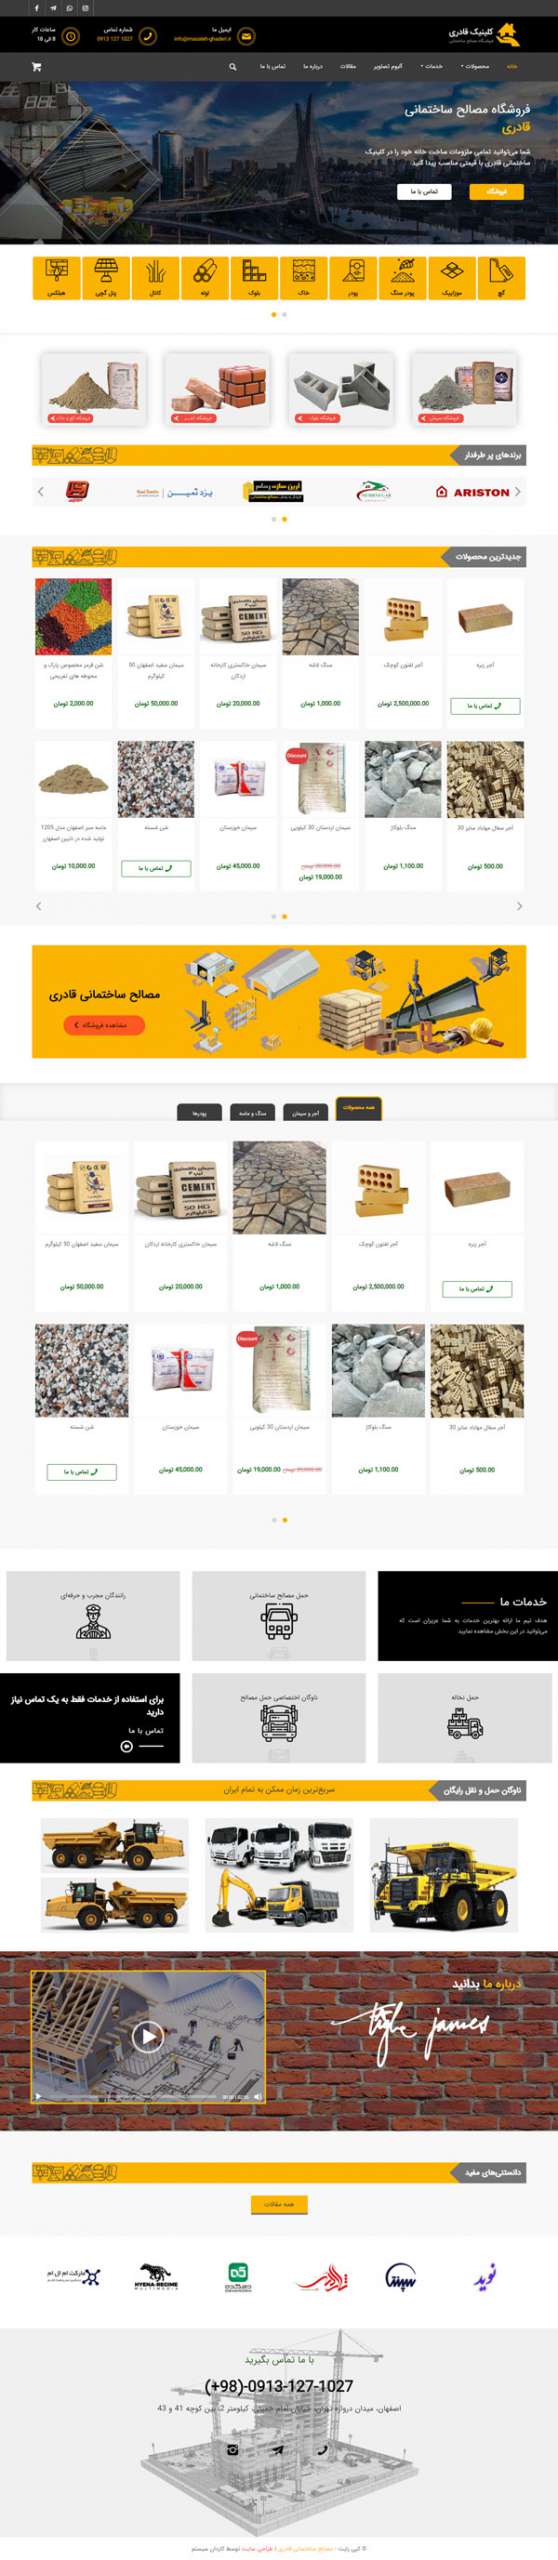 طراحی سایت مصالح ساختمانی قادری | فروشگاه مصالح ساختمانی